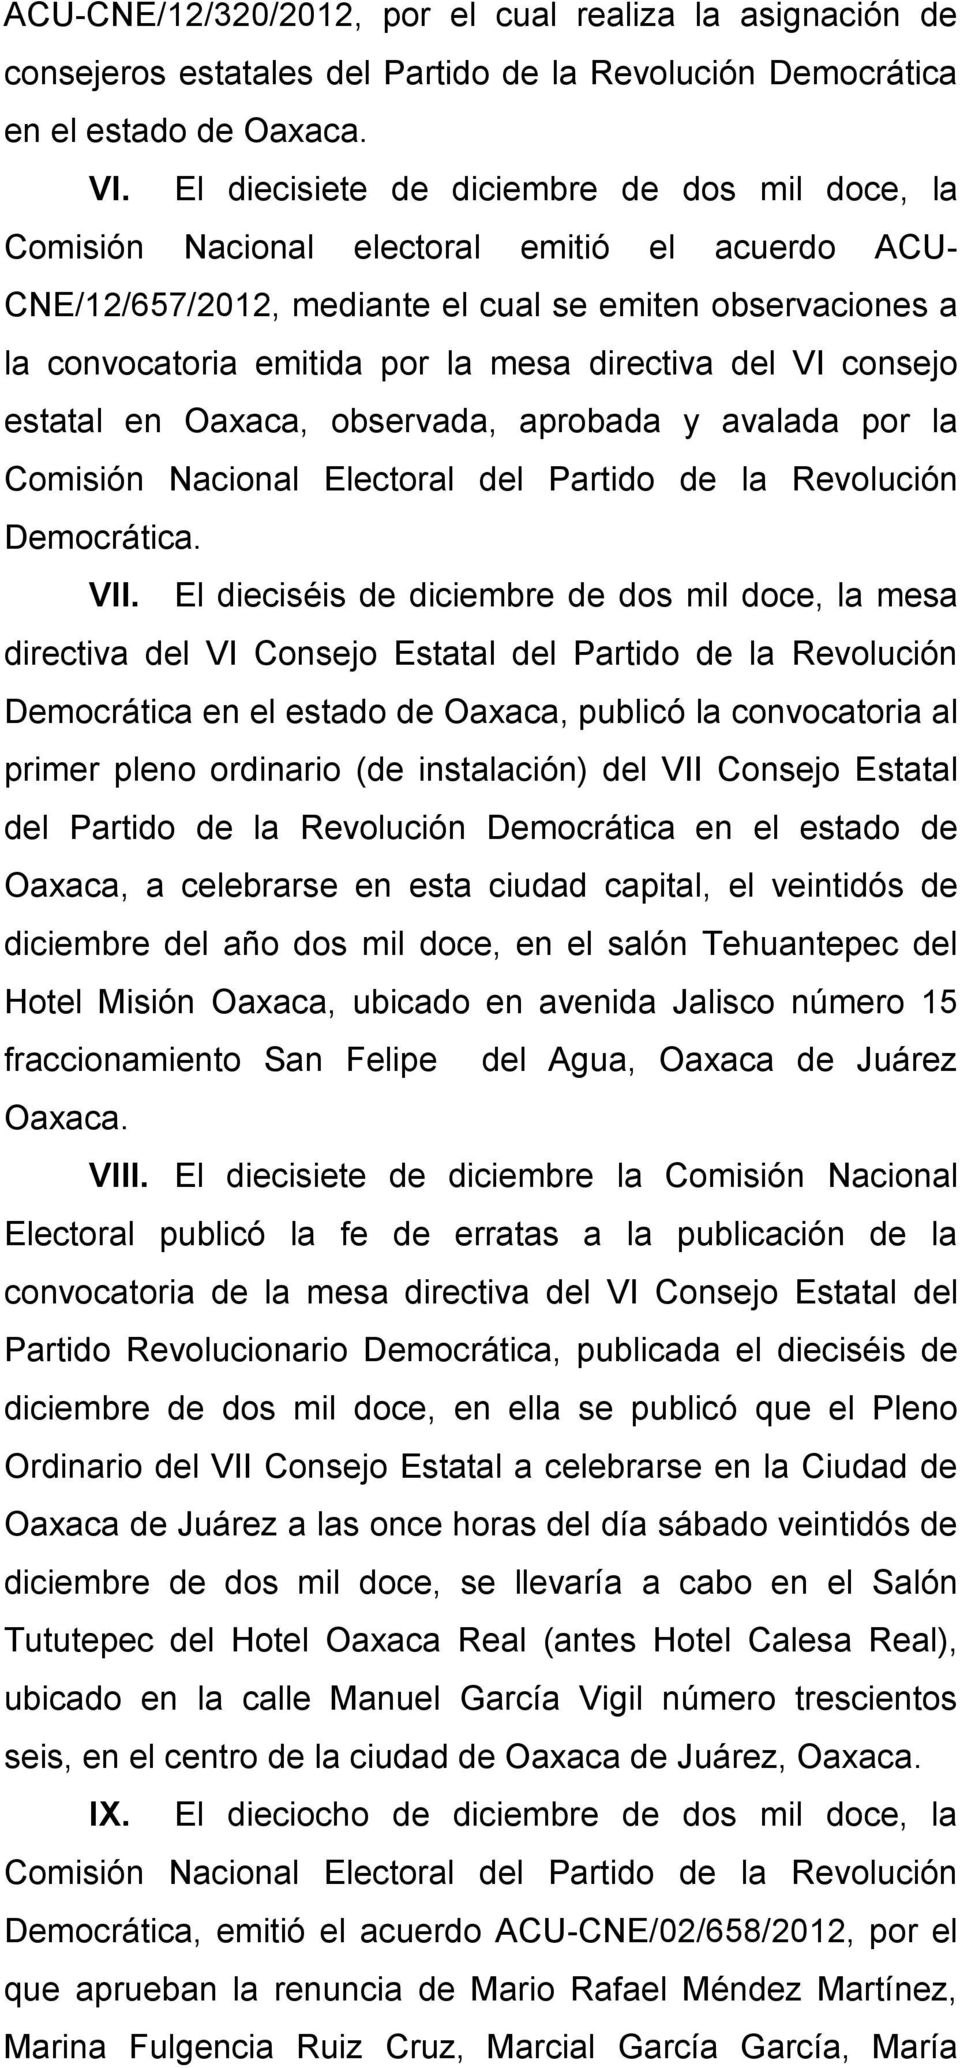 directiva del VI consejo estatal en Oaxaca, observada, aprobada y avalada por la Comisión Nacional Electoral del Partido de la Revolución Democrática. VII.